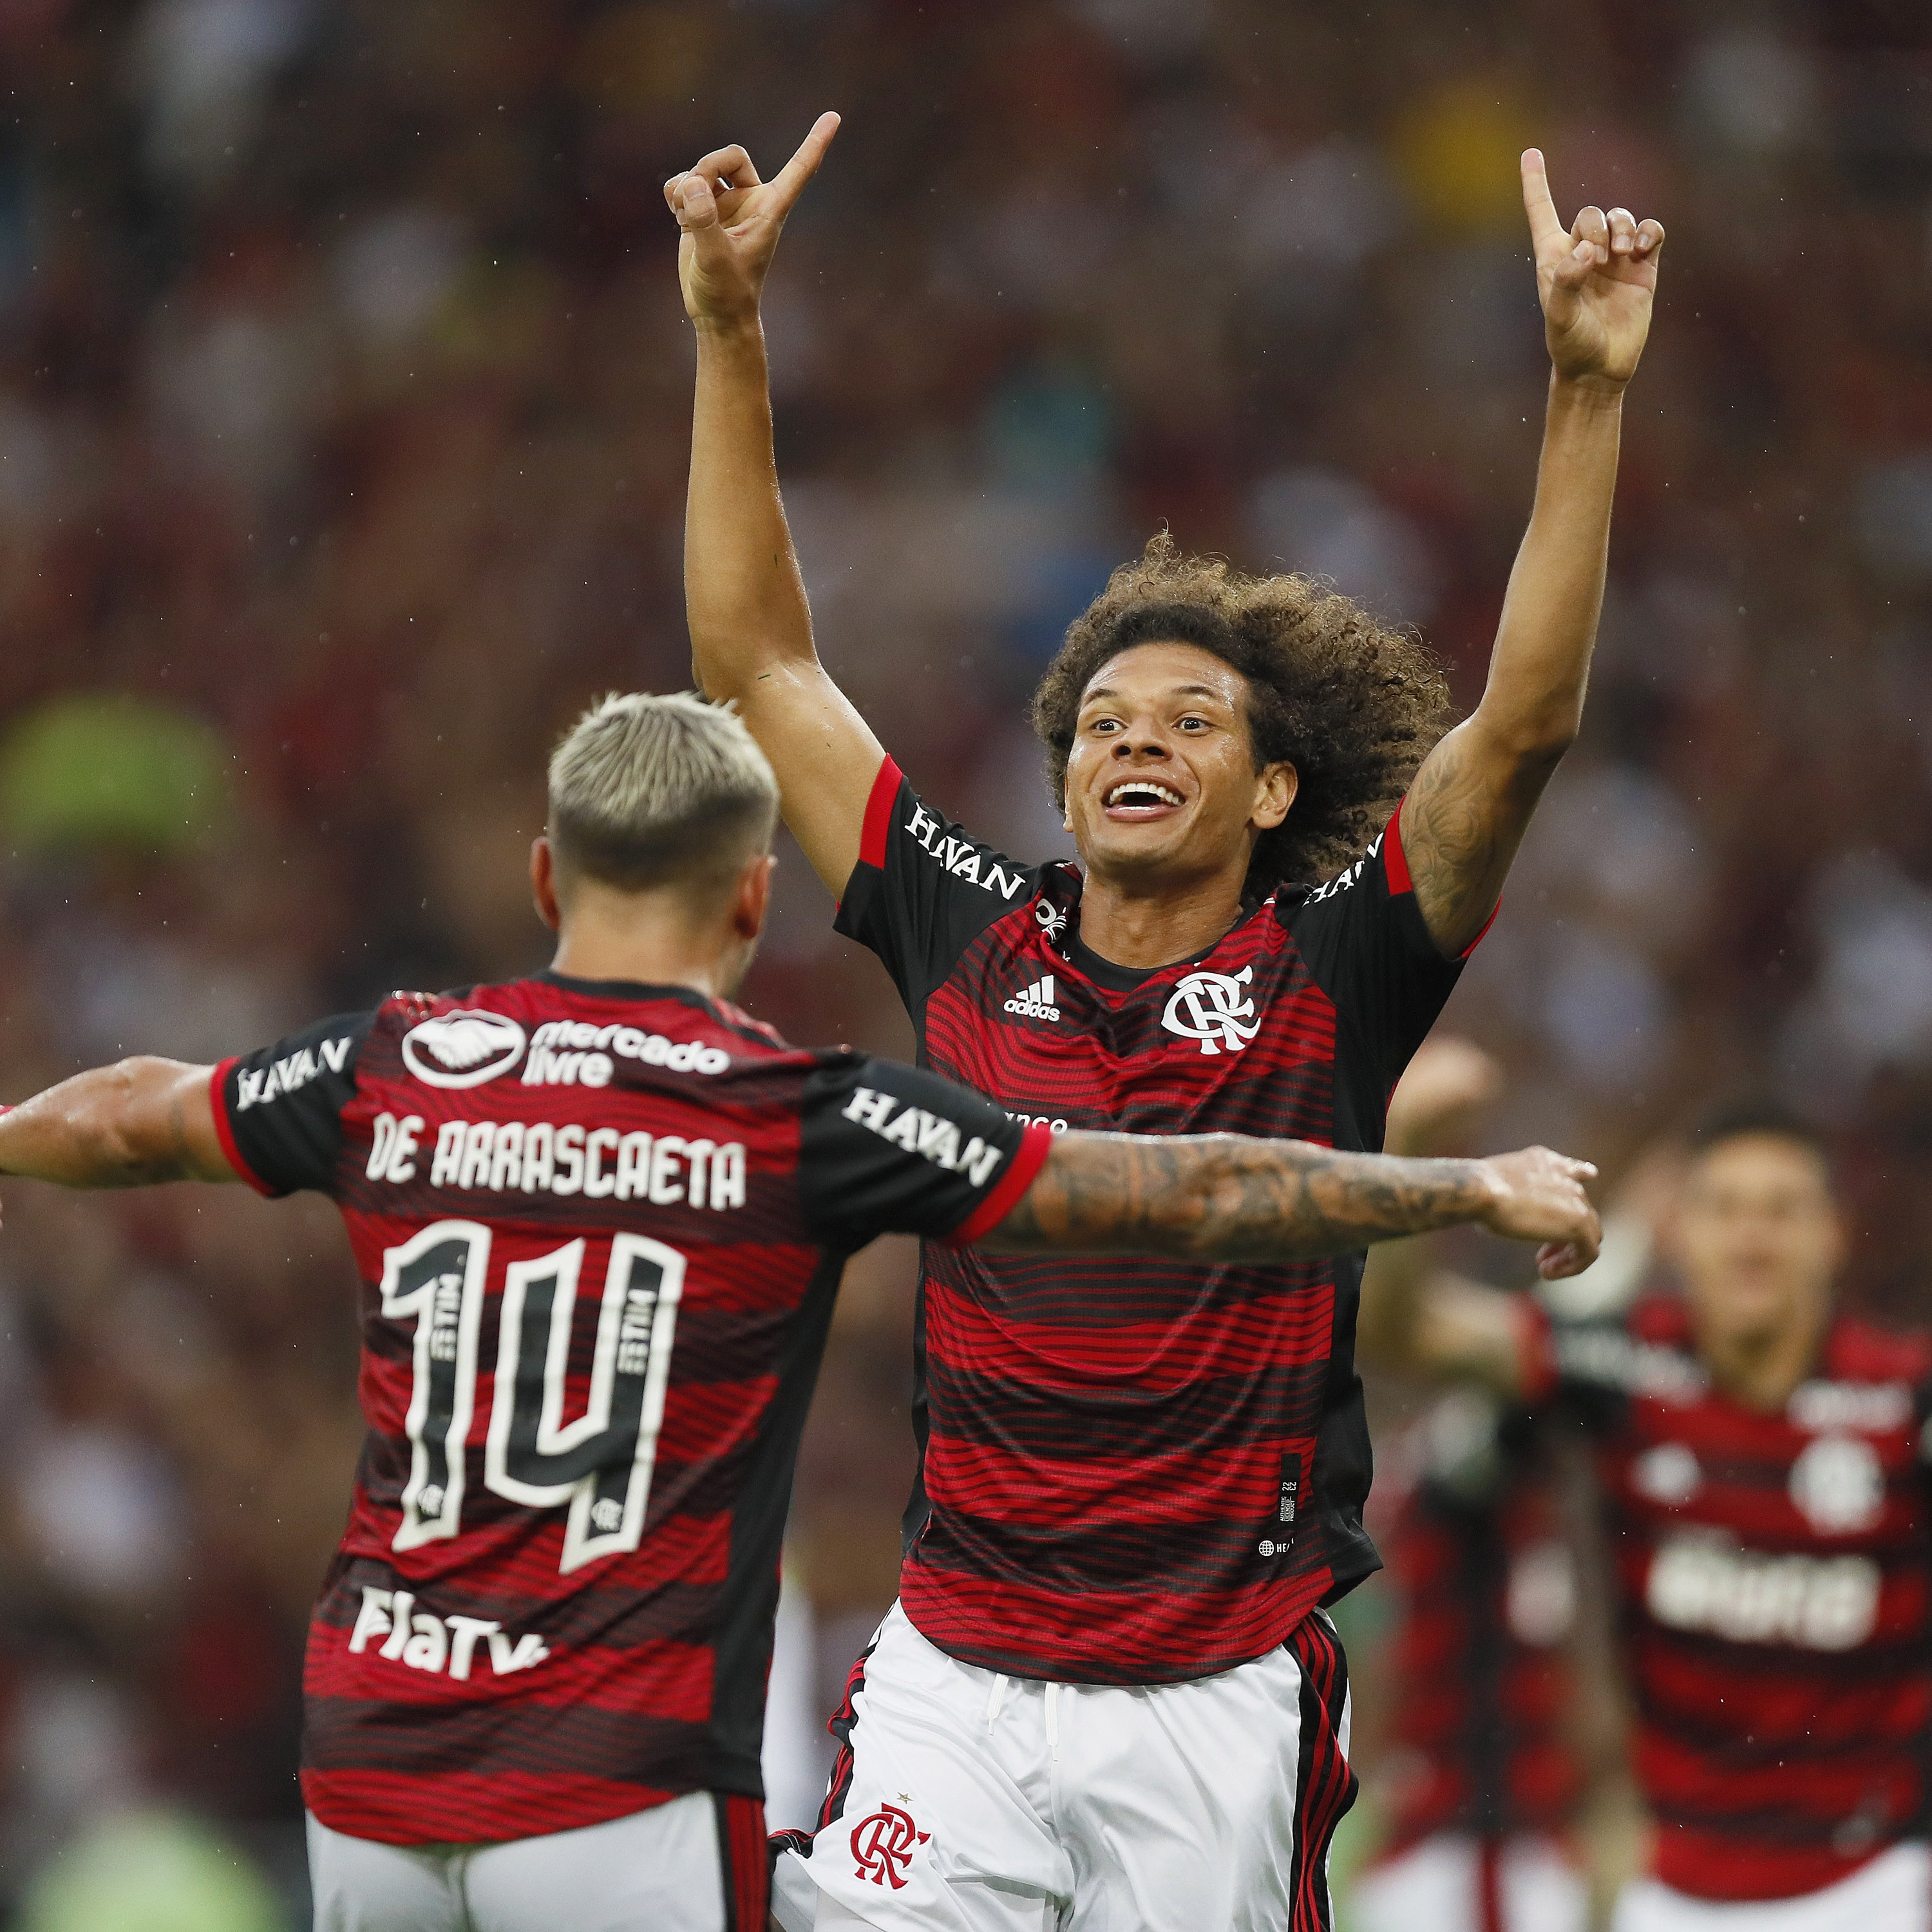 A Mesa #152 - Flamengo chega à final do Carioca, mas não encanta torcedor: "Está um time mais comum. Precisa ser menos robótico e mais estratégico"